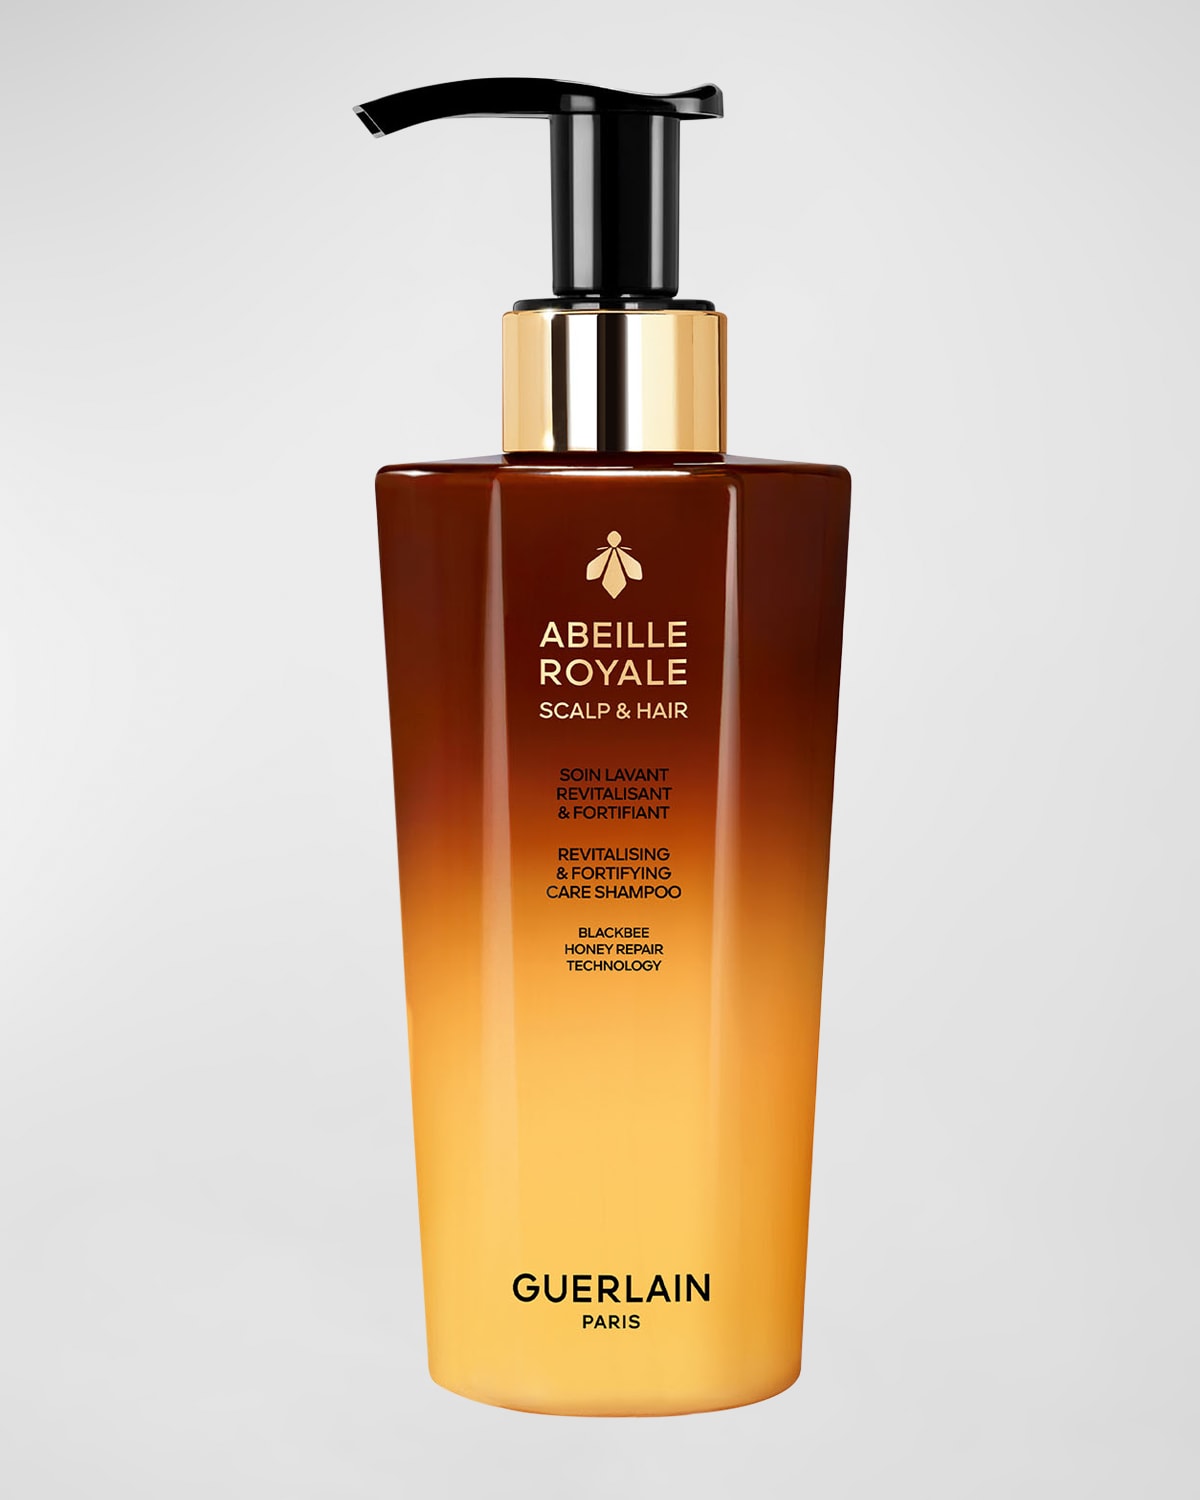 GUERLAIN Abeille Royale Revitalizing & Fortifying Care Shampoo, 9.8 oz.